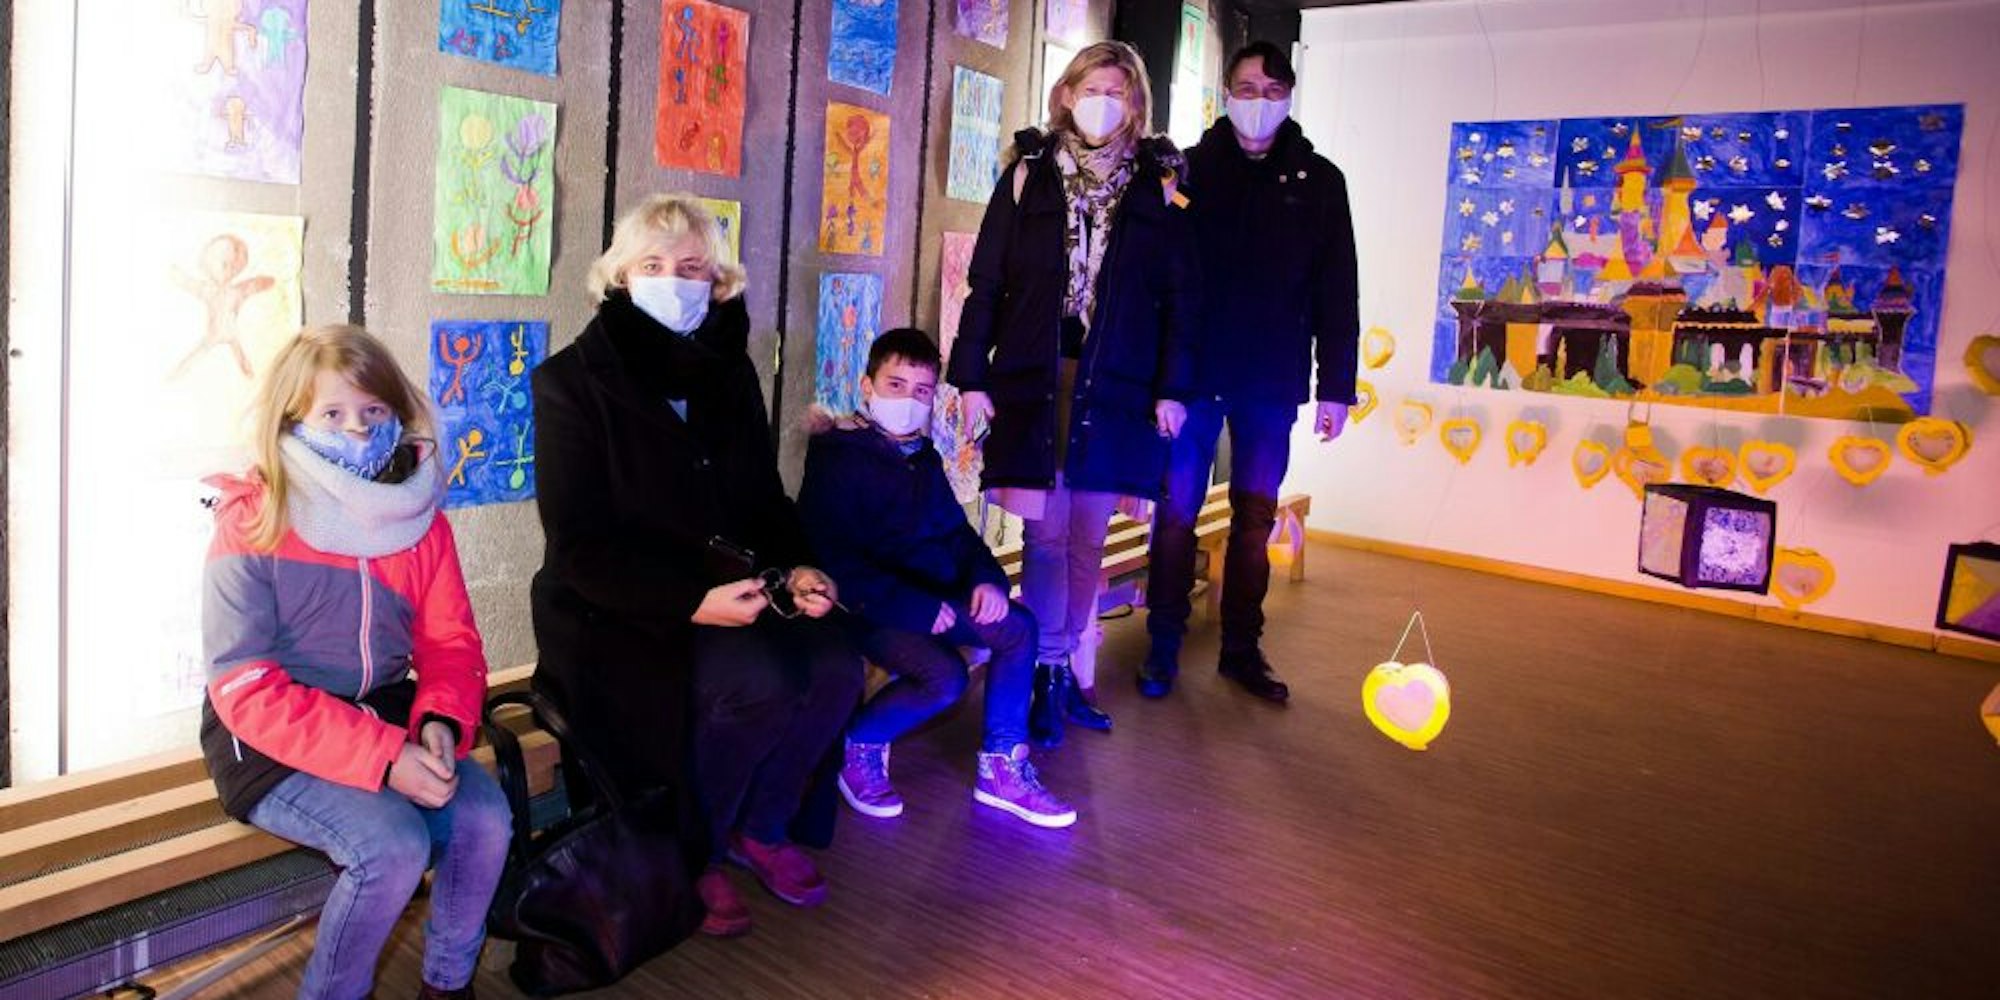 Das Ladenlokal an der Wilhelmstraße haben die Kinder mit Hilfe einiger Erwachsener mit reichlich Kunst ausstaffiert. Mindestens bis zum 6. Januar soll die Ausstellung dort zu sehen sein.